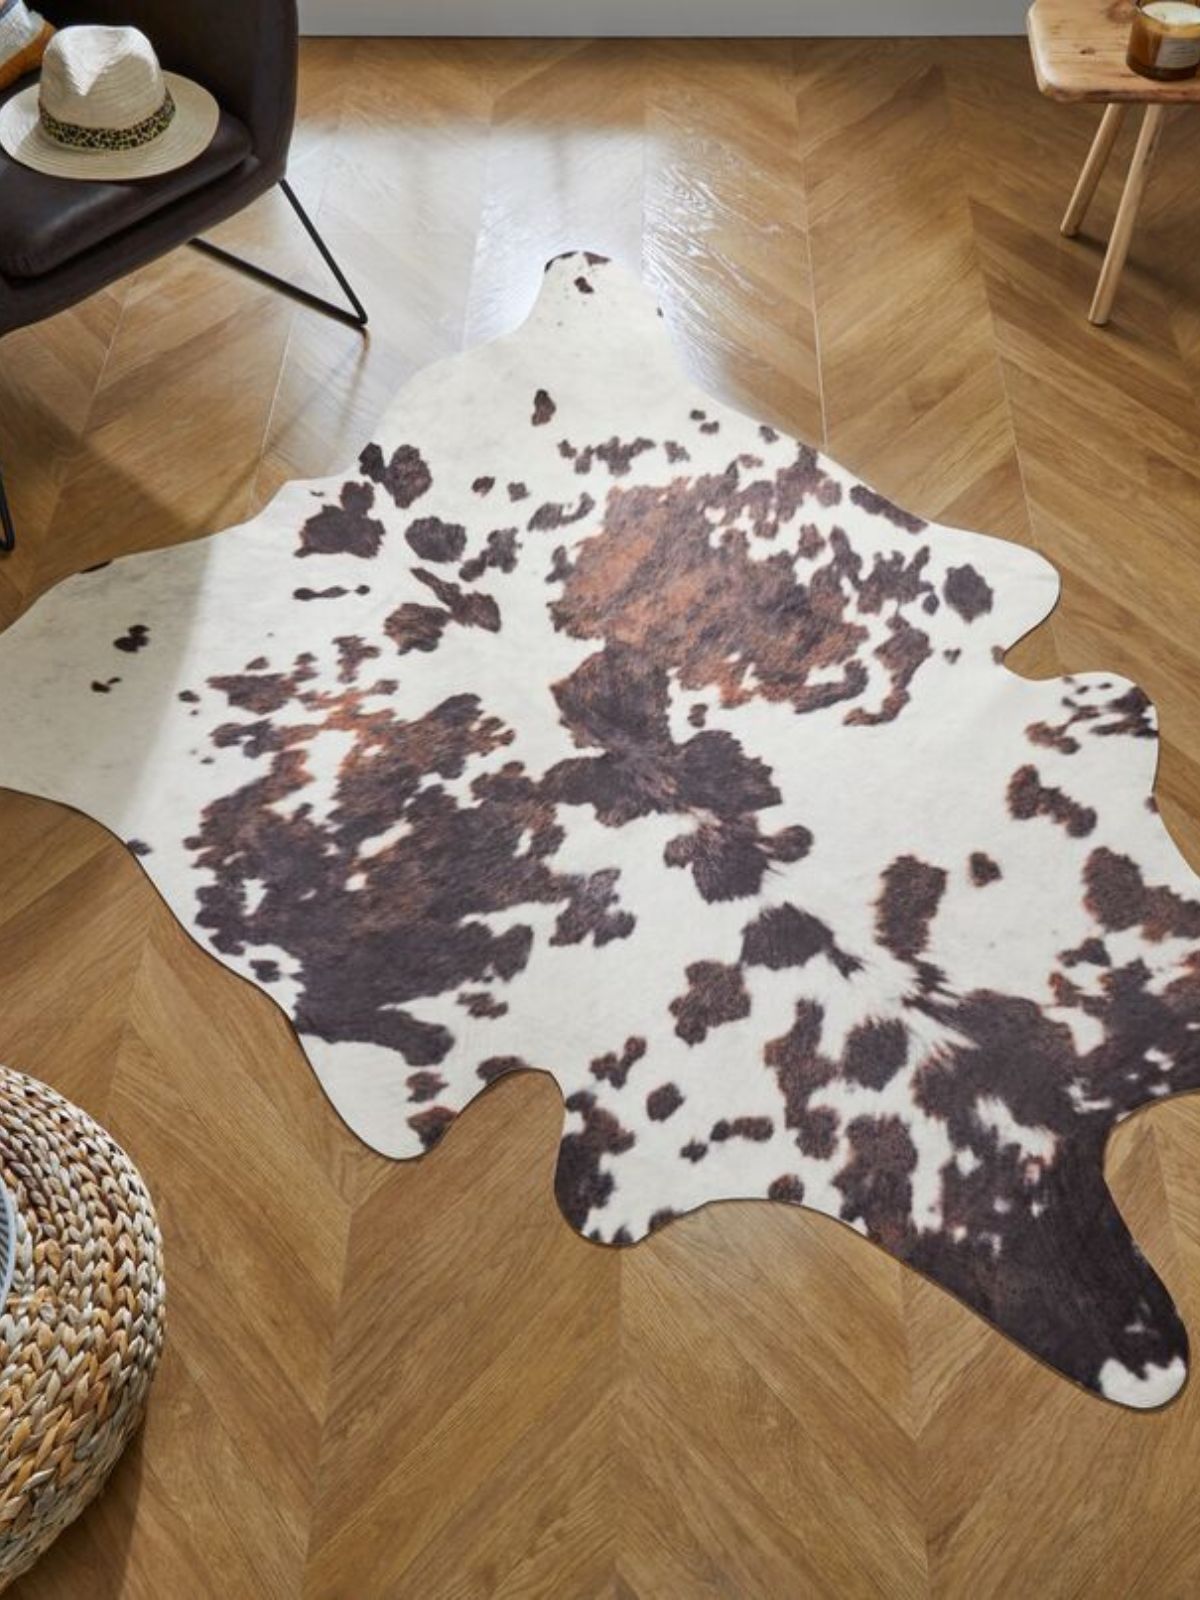 Tappeto animale Cow Print in poliestere, colore bianco e nero 155x195 cm.-2